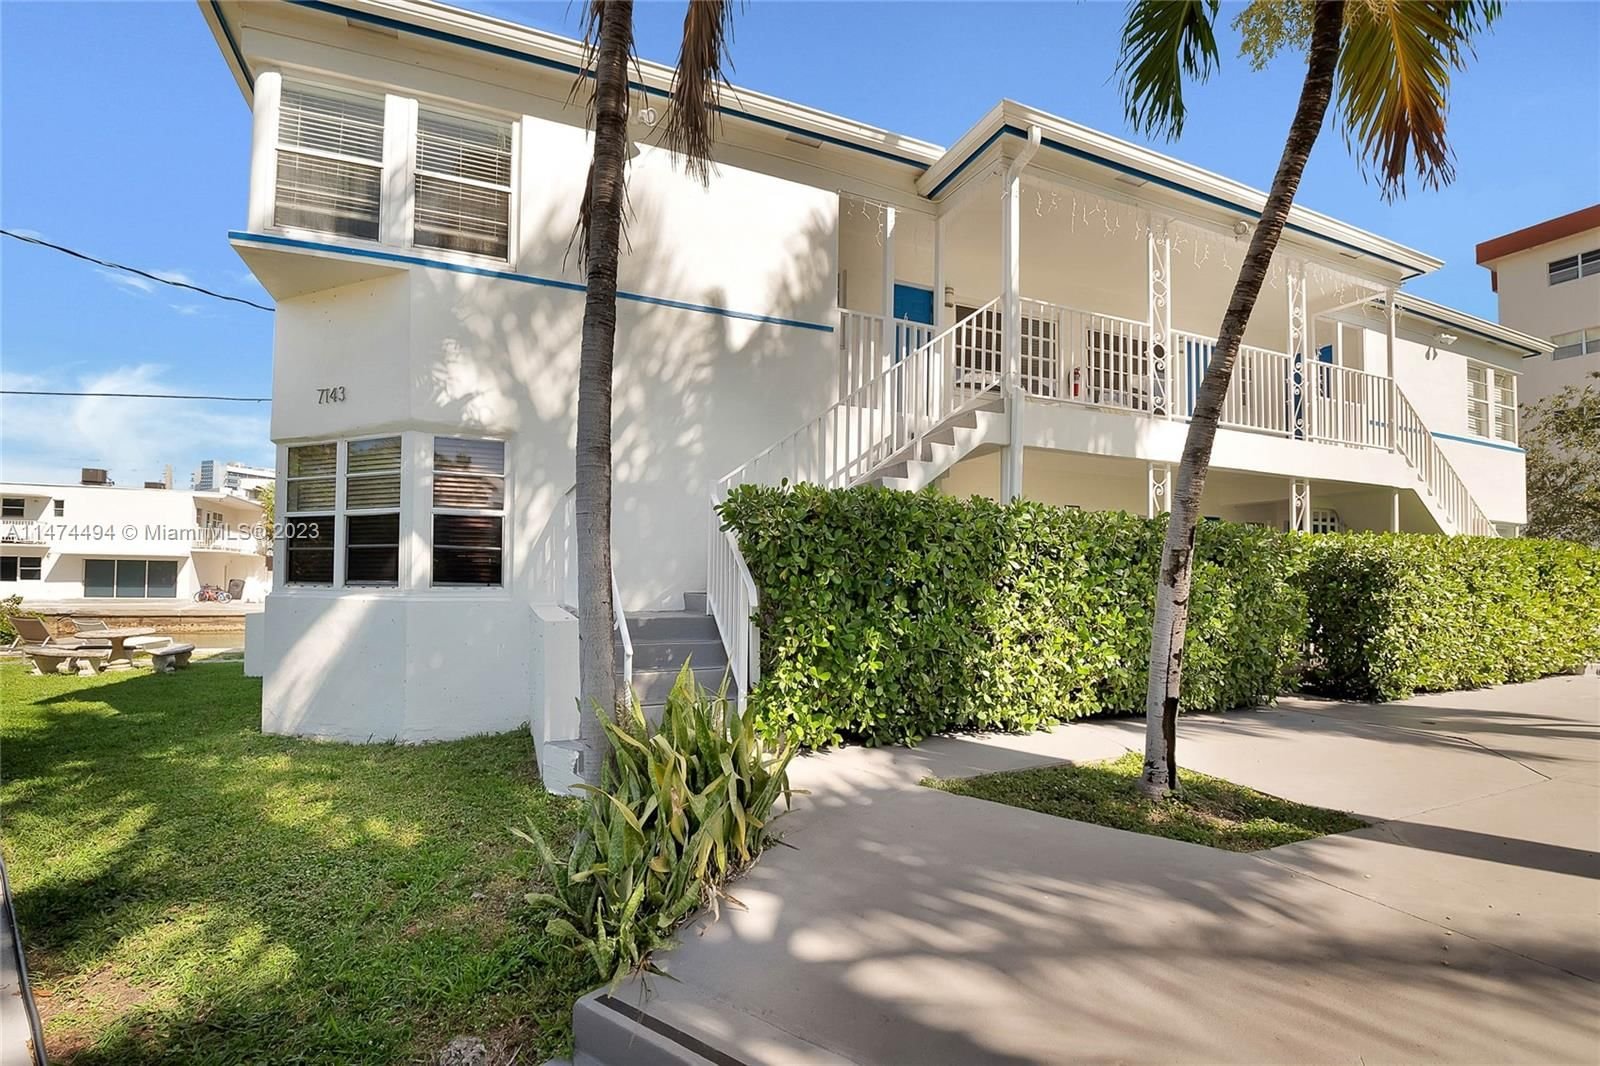 Real estate property located at 7143 Bonita Dr, Miami-Dade County, Miami Beach, FL